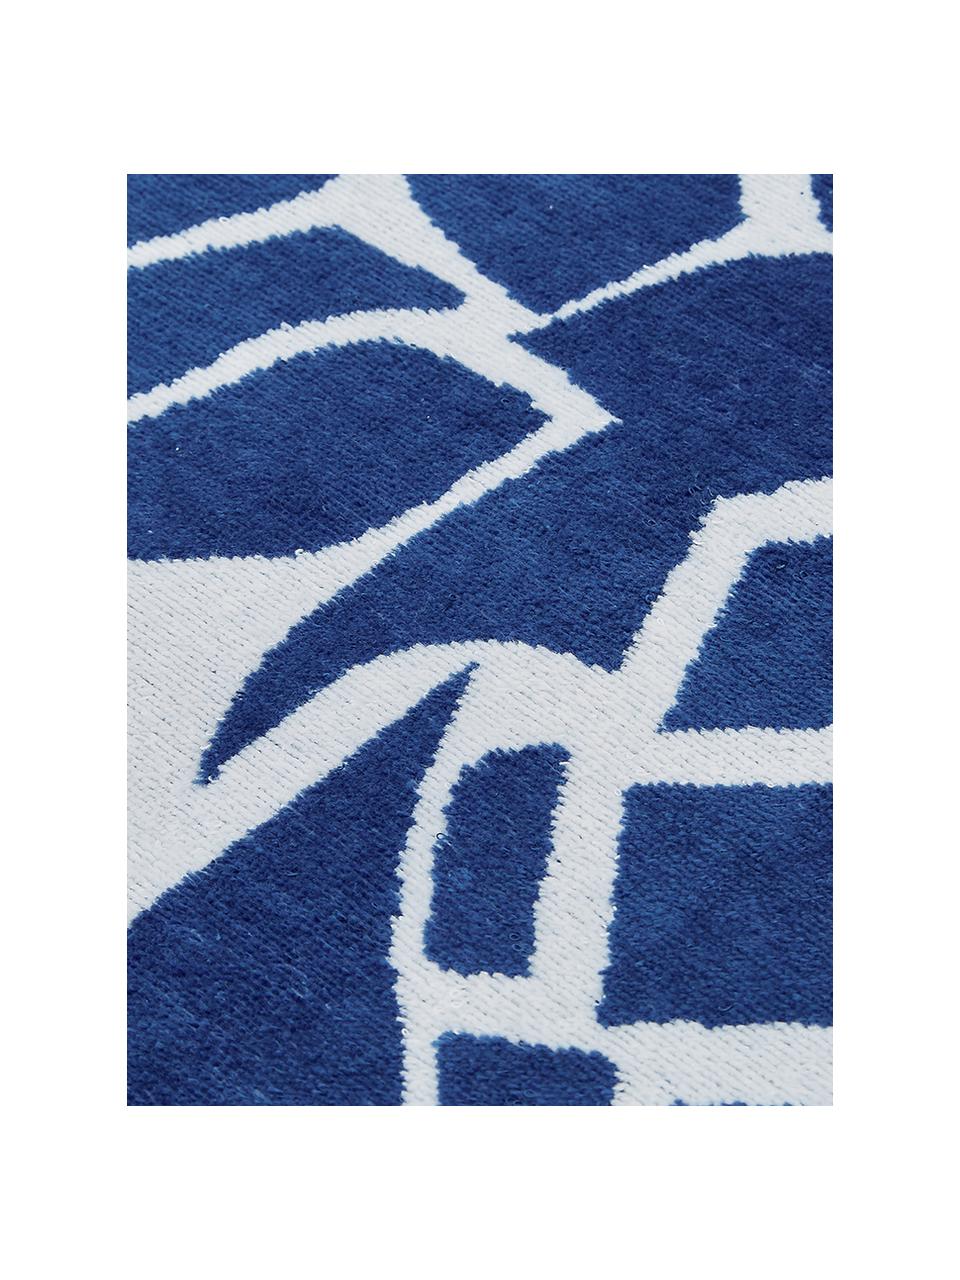 Strandlaken Anas, Katoen
Lichte kwaliteit 380 g/m², Blauw, wit, 80 x 160 cm